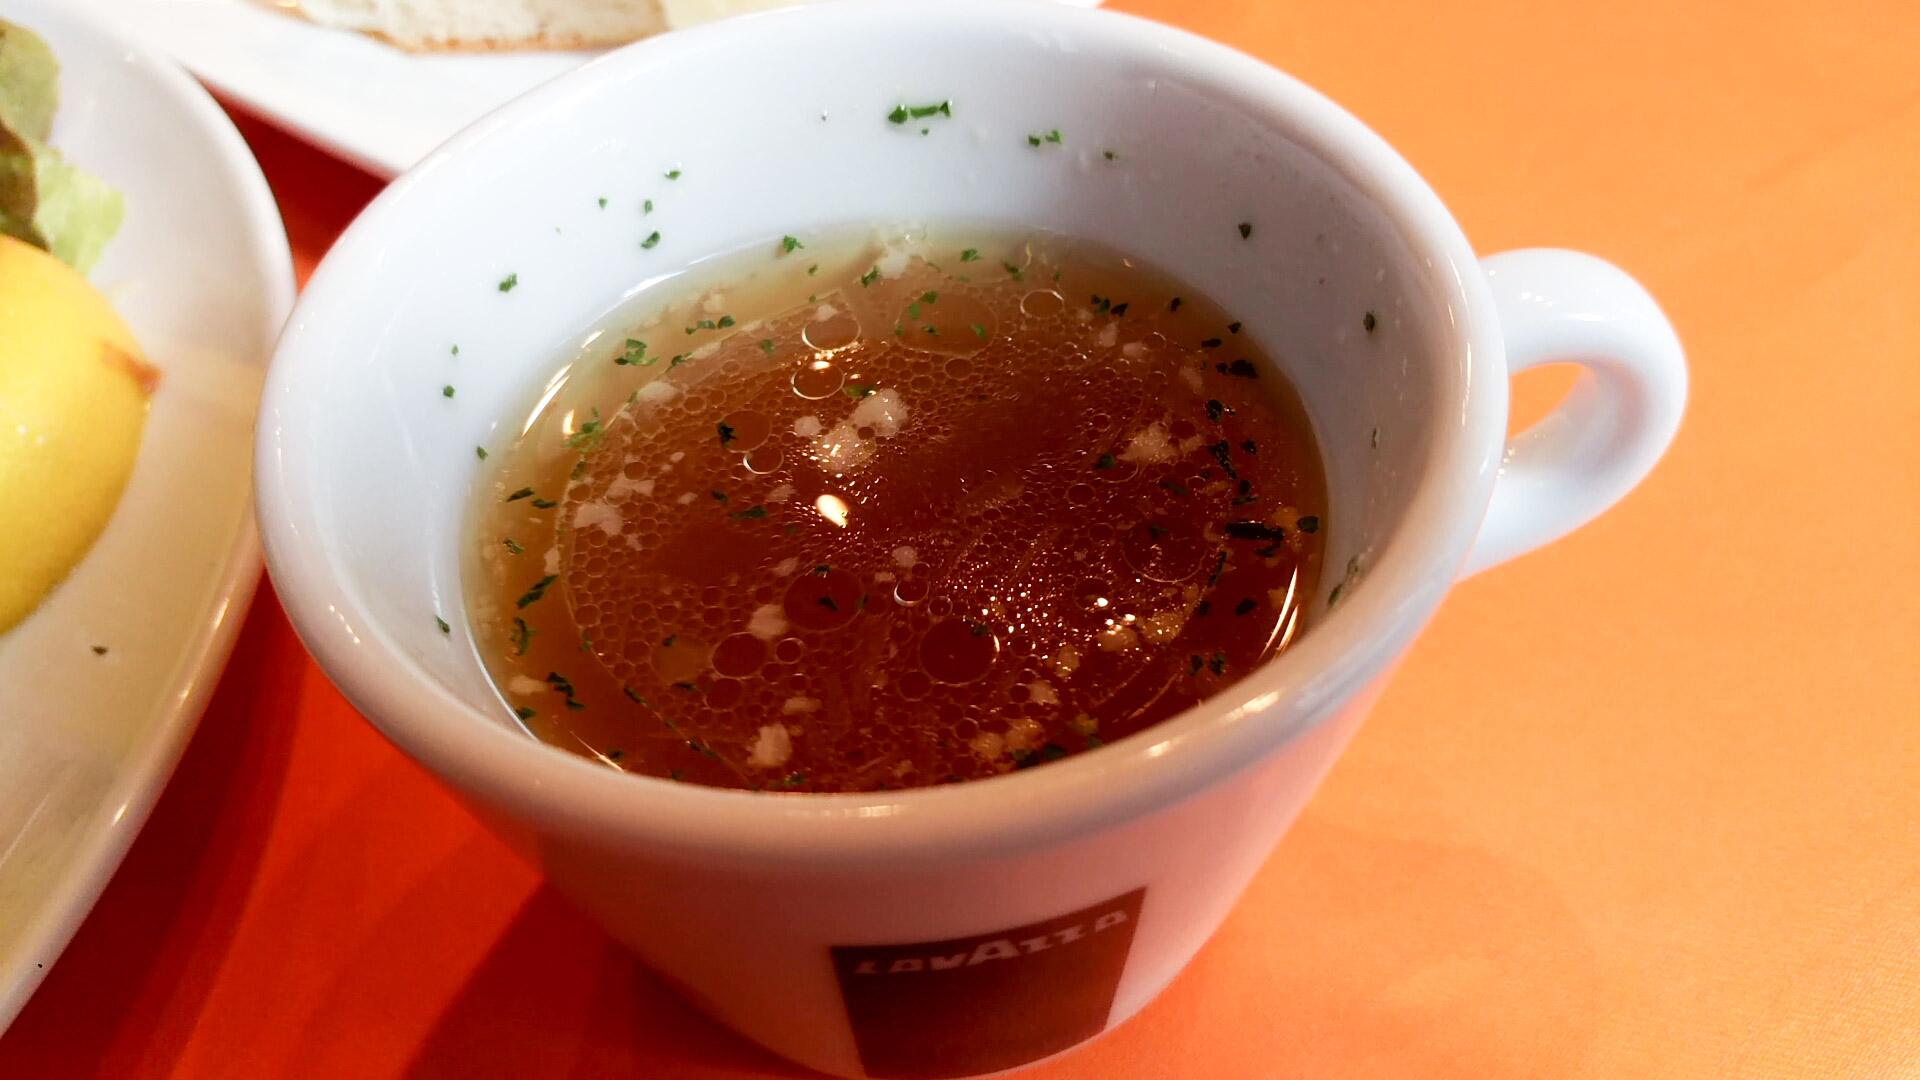 スープ。今回はコンビーフが具として沈んでいました。前回までと違う味のようです